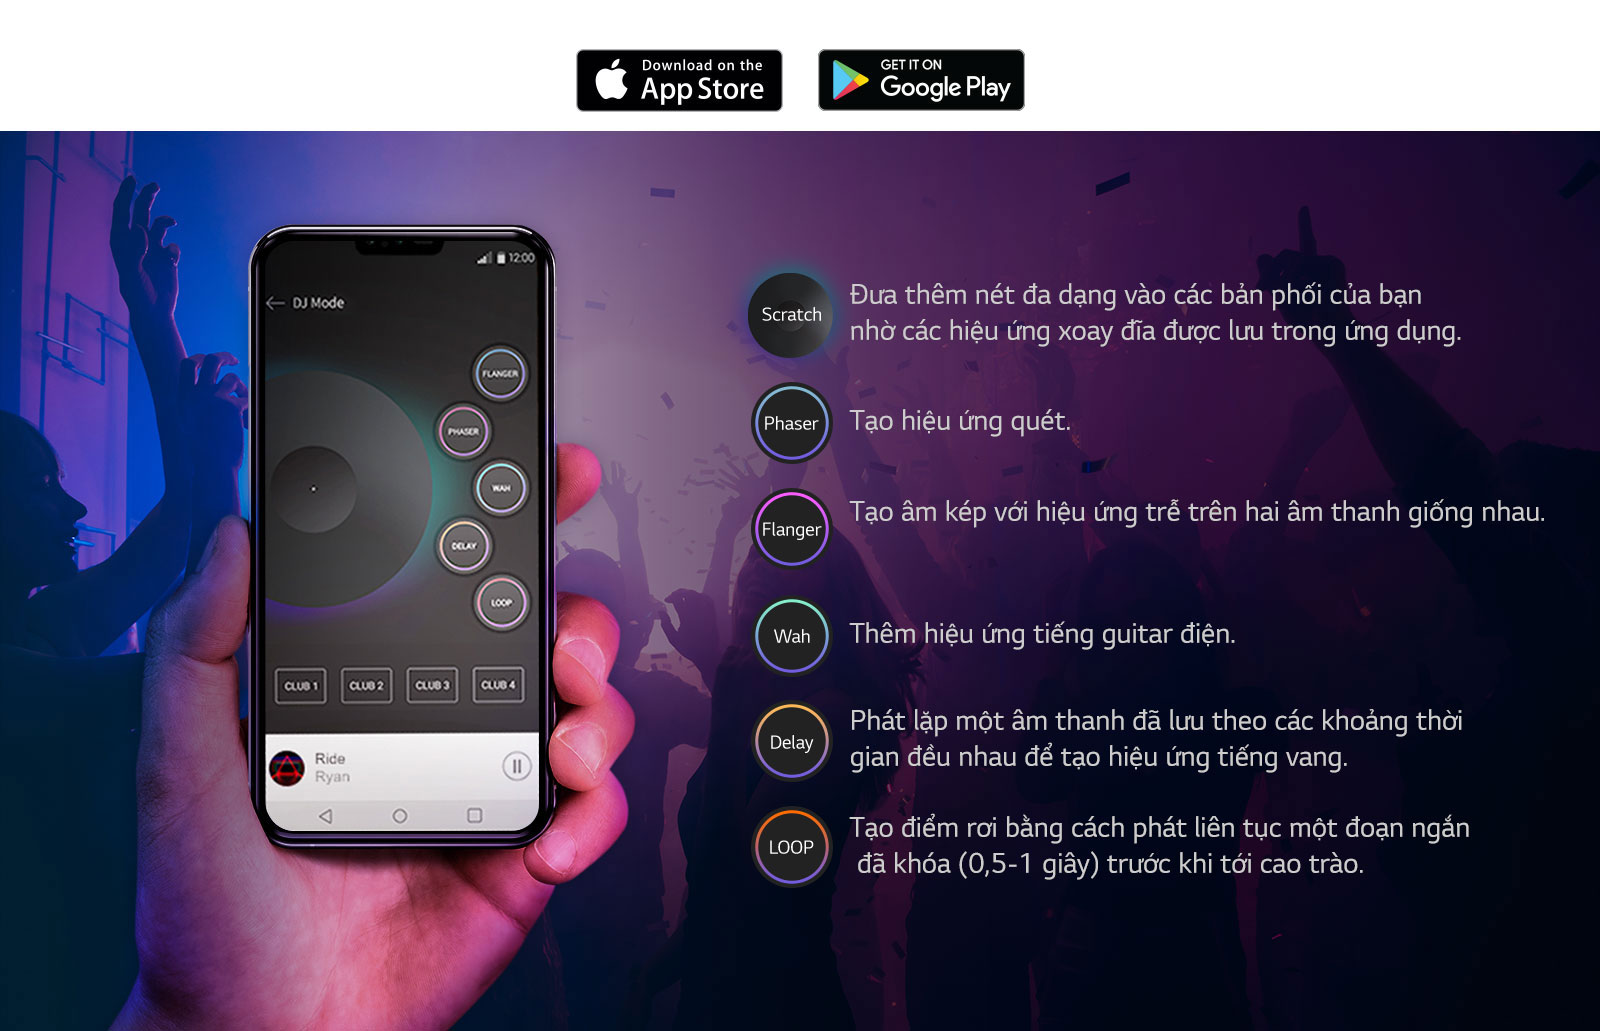 Hình ảnh bàn tay đang cầm điện thoại có bật màn hình ứng dụng DJ và các chức năng được liệt kê bên cạnh để thể hiện âm thanh phát ra từ loa như thể một DJ đang chơi qua ứng dụng XBOOM.